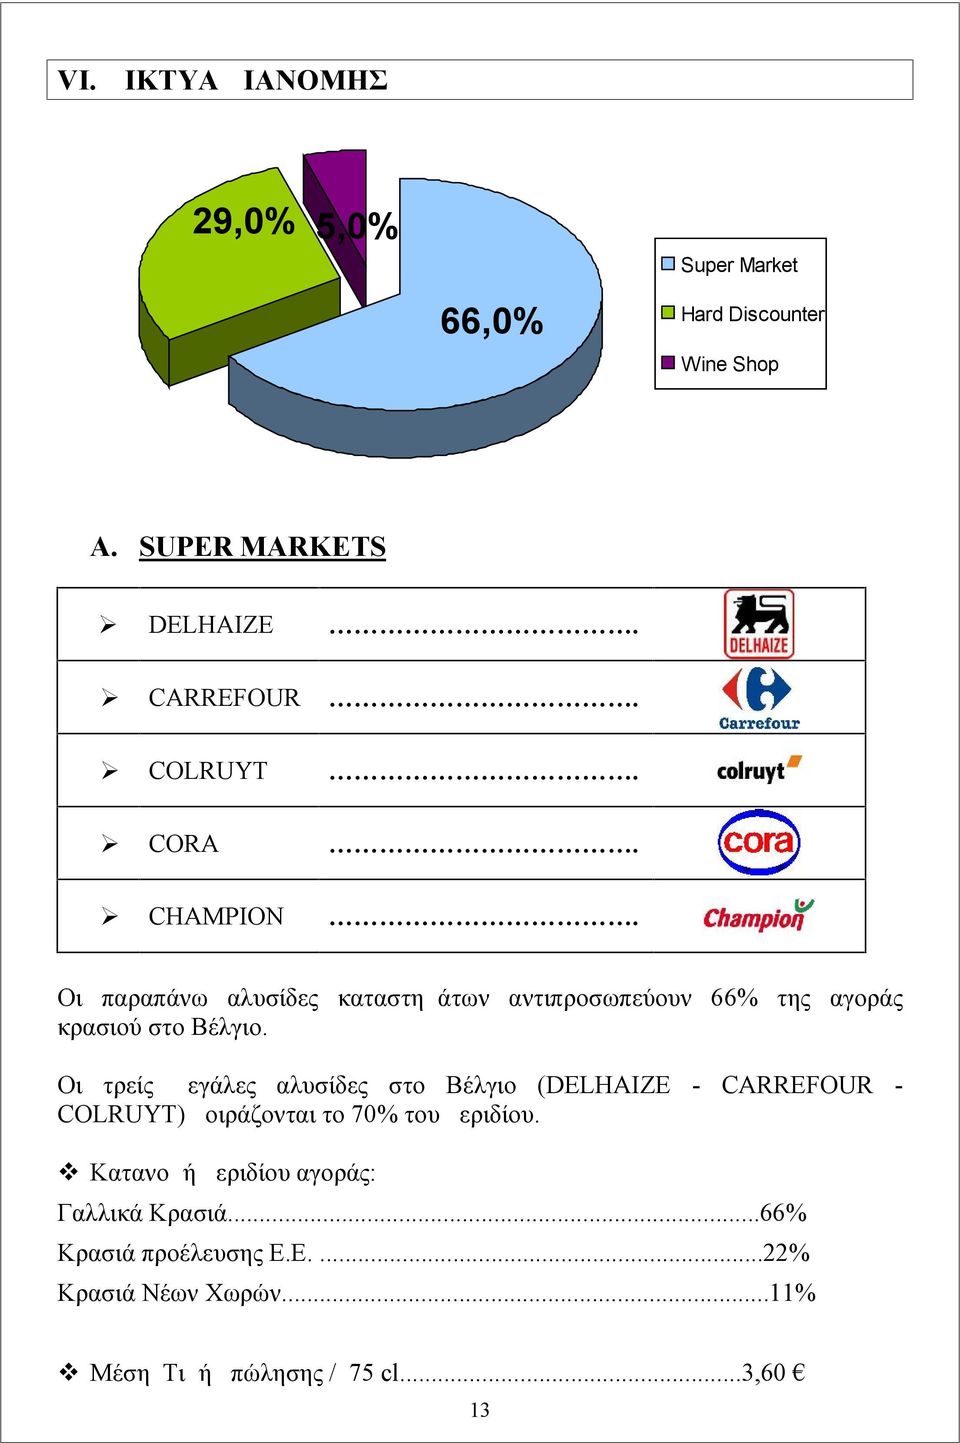 Οι τρείς μεγάλες αλυσίδες στο Βέλγιο (DELHAIZE - CARREFOUR - COLRUYT) μοιράζονται το 70% του μεριδίου.